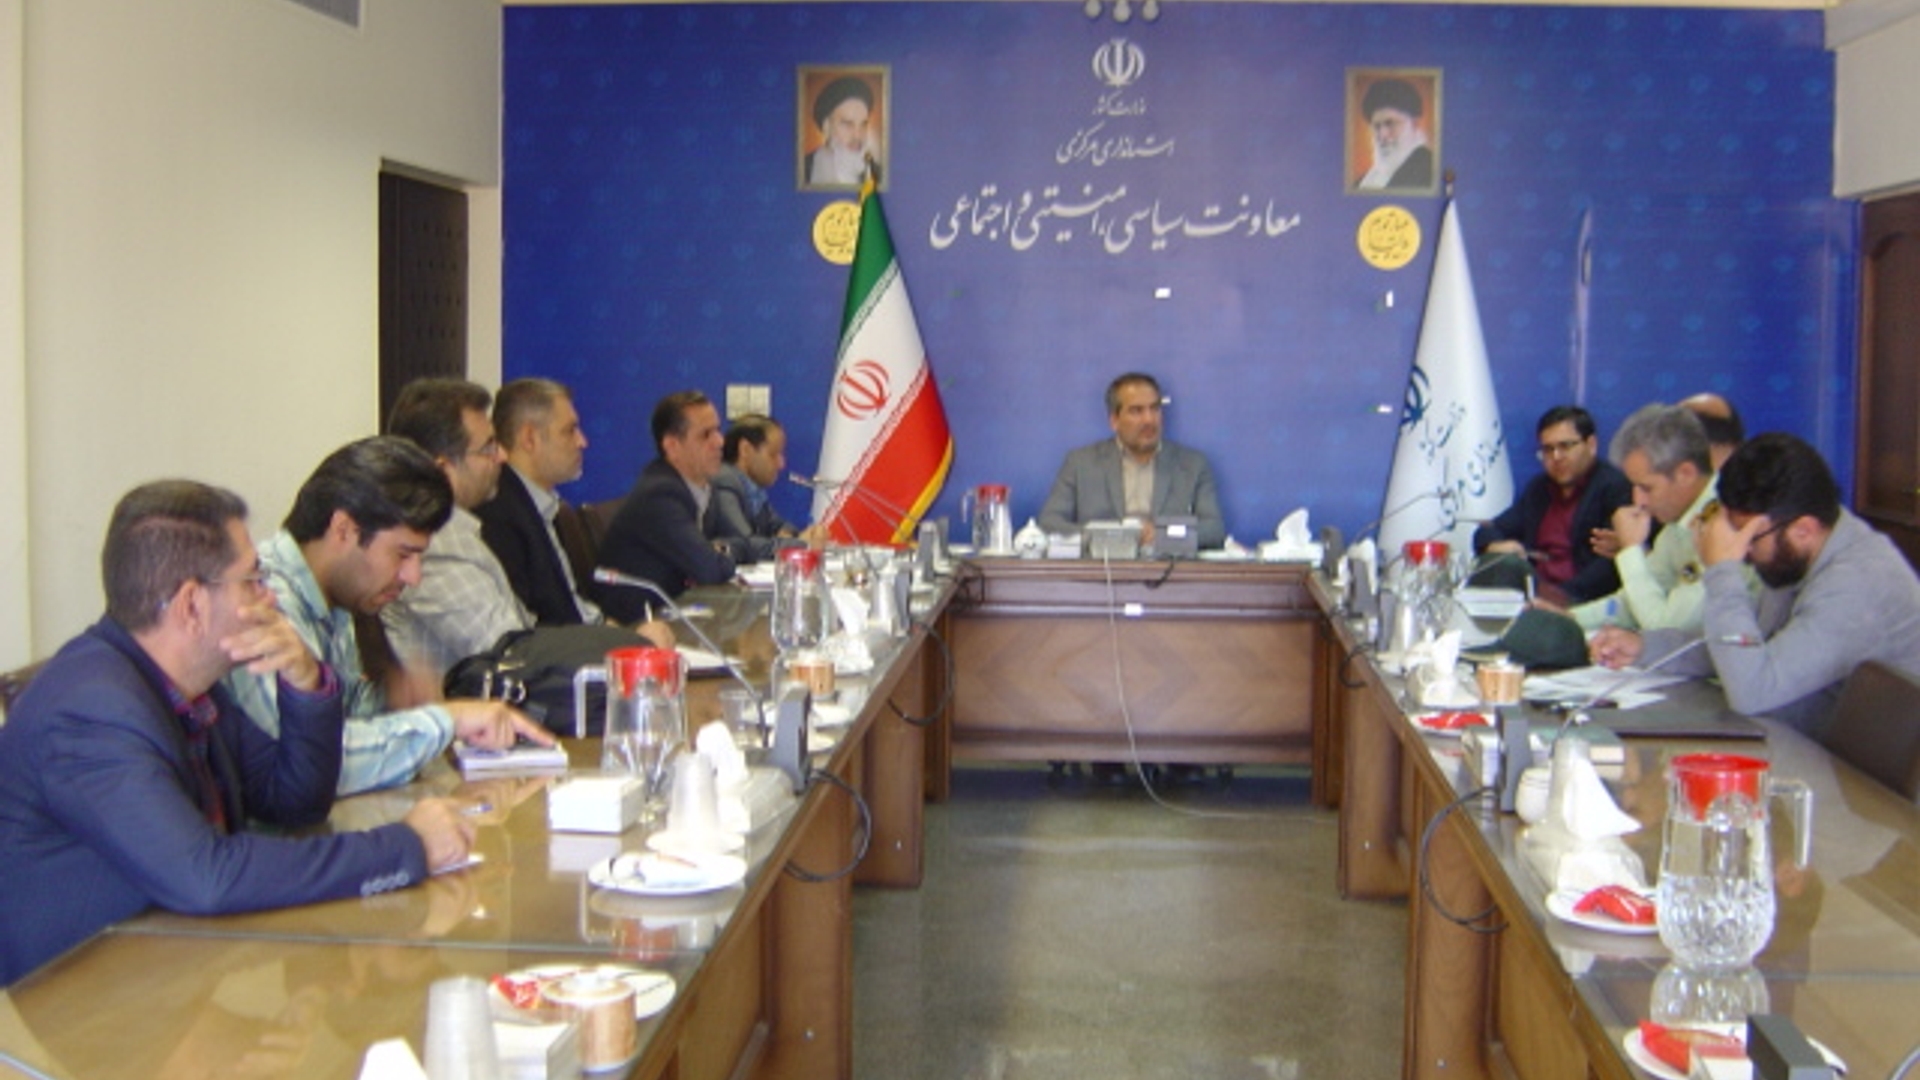 جلسه کمیسیون پیشگیری و مقابله با سرقت استان ساعت 8 صبح روز سه شنبه مورخ 18-7-1402 به ریاست آقای رحیمی تبار مدیر کل امنیتی و انتظامی برگزار گردید.